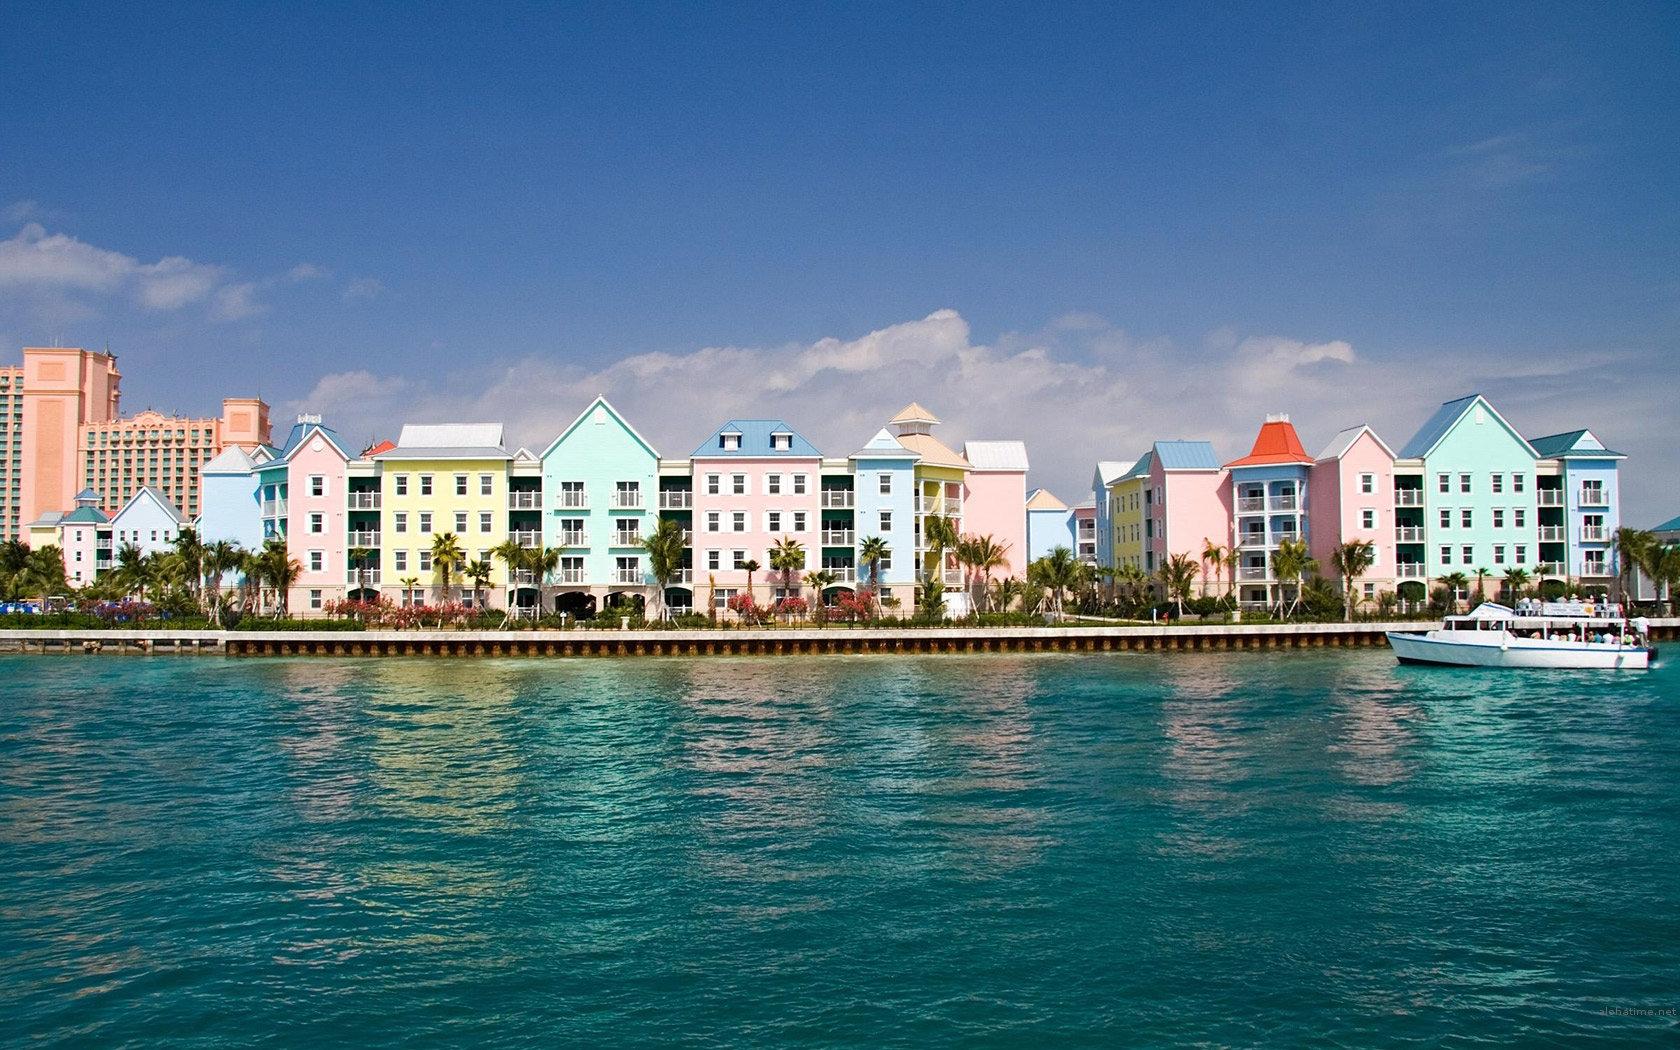 багамские острова нассау достопримечательности фото